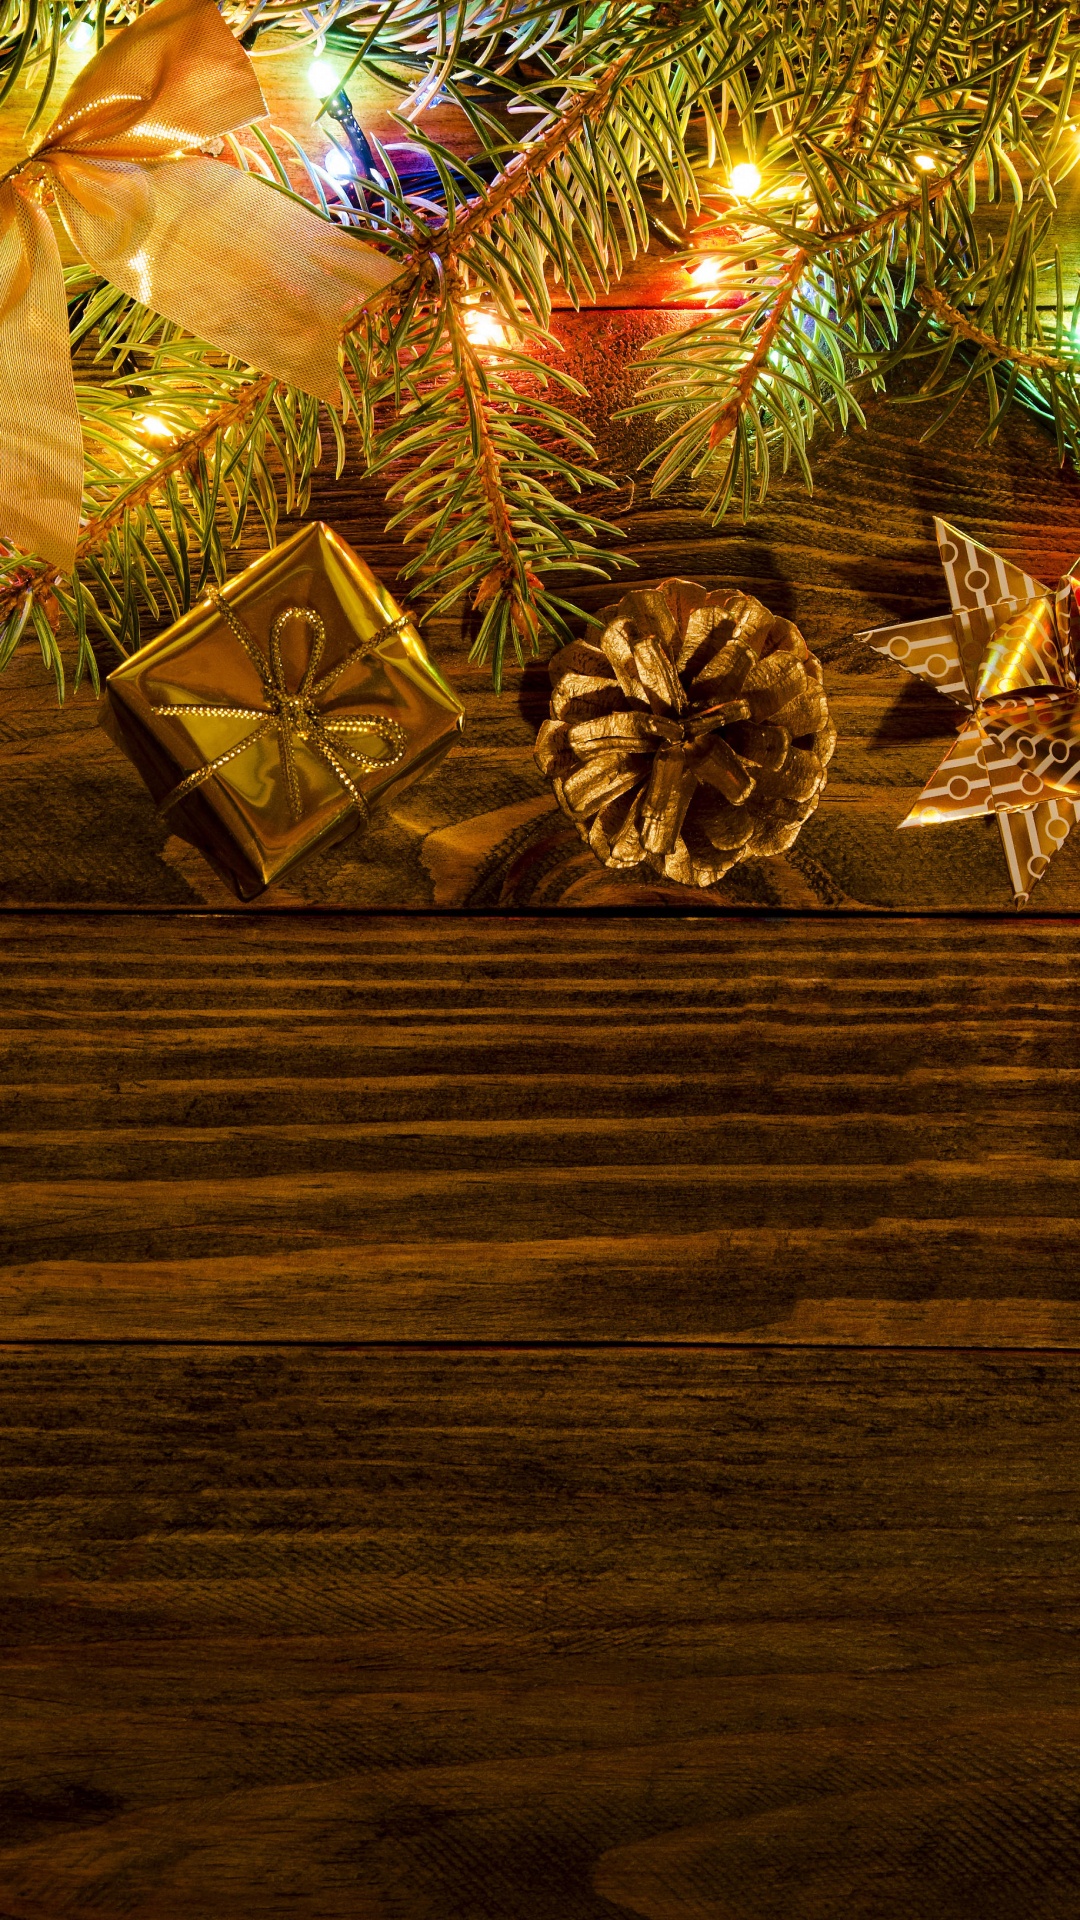 Nochevieja, El Día De Navidad, Navidad, Decoración de la Navidad, Luces de Navidad. Wallpaper in 1080x1920 Resolution